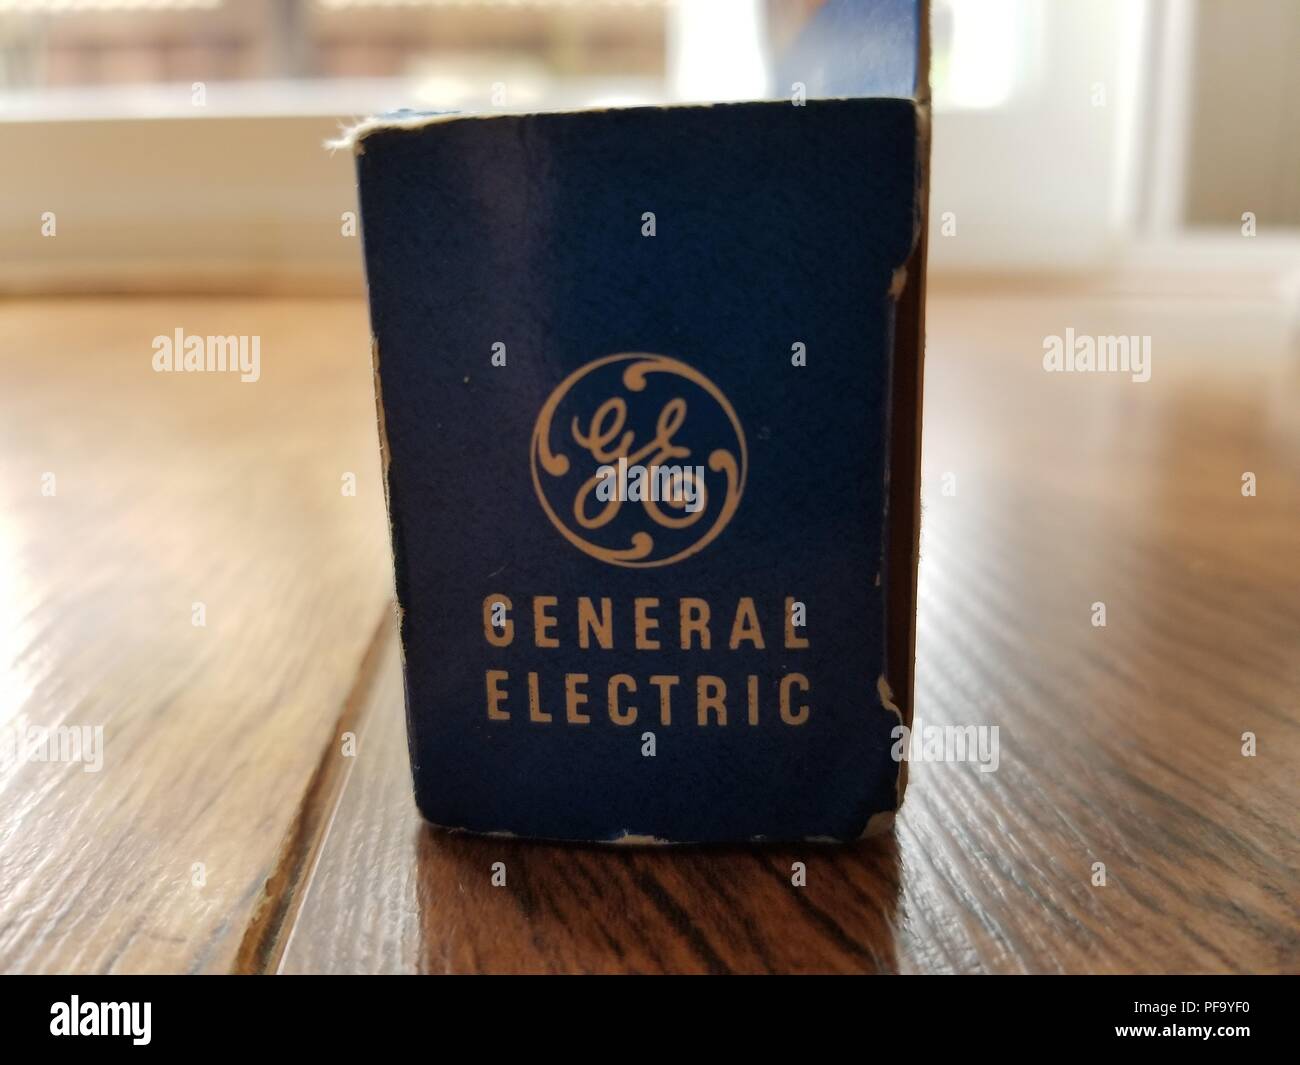 Close-up of General Electric logo sur un paquet ca historique Années 1950, sur une surface en bois clair, le 14 mars 2018. () Banque D'Images